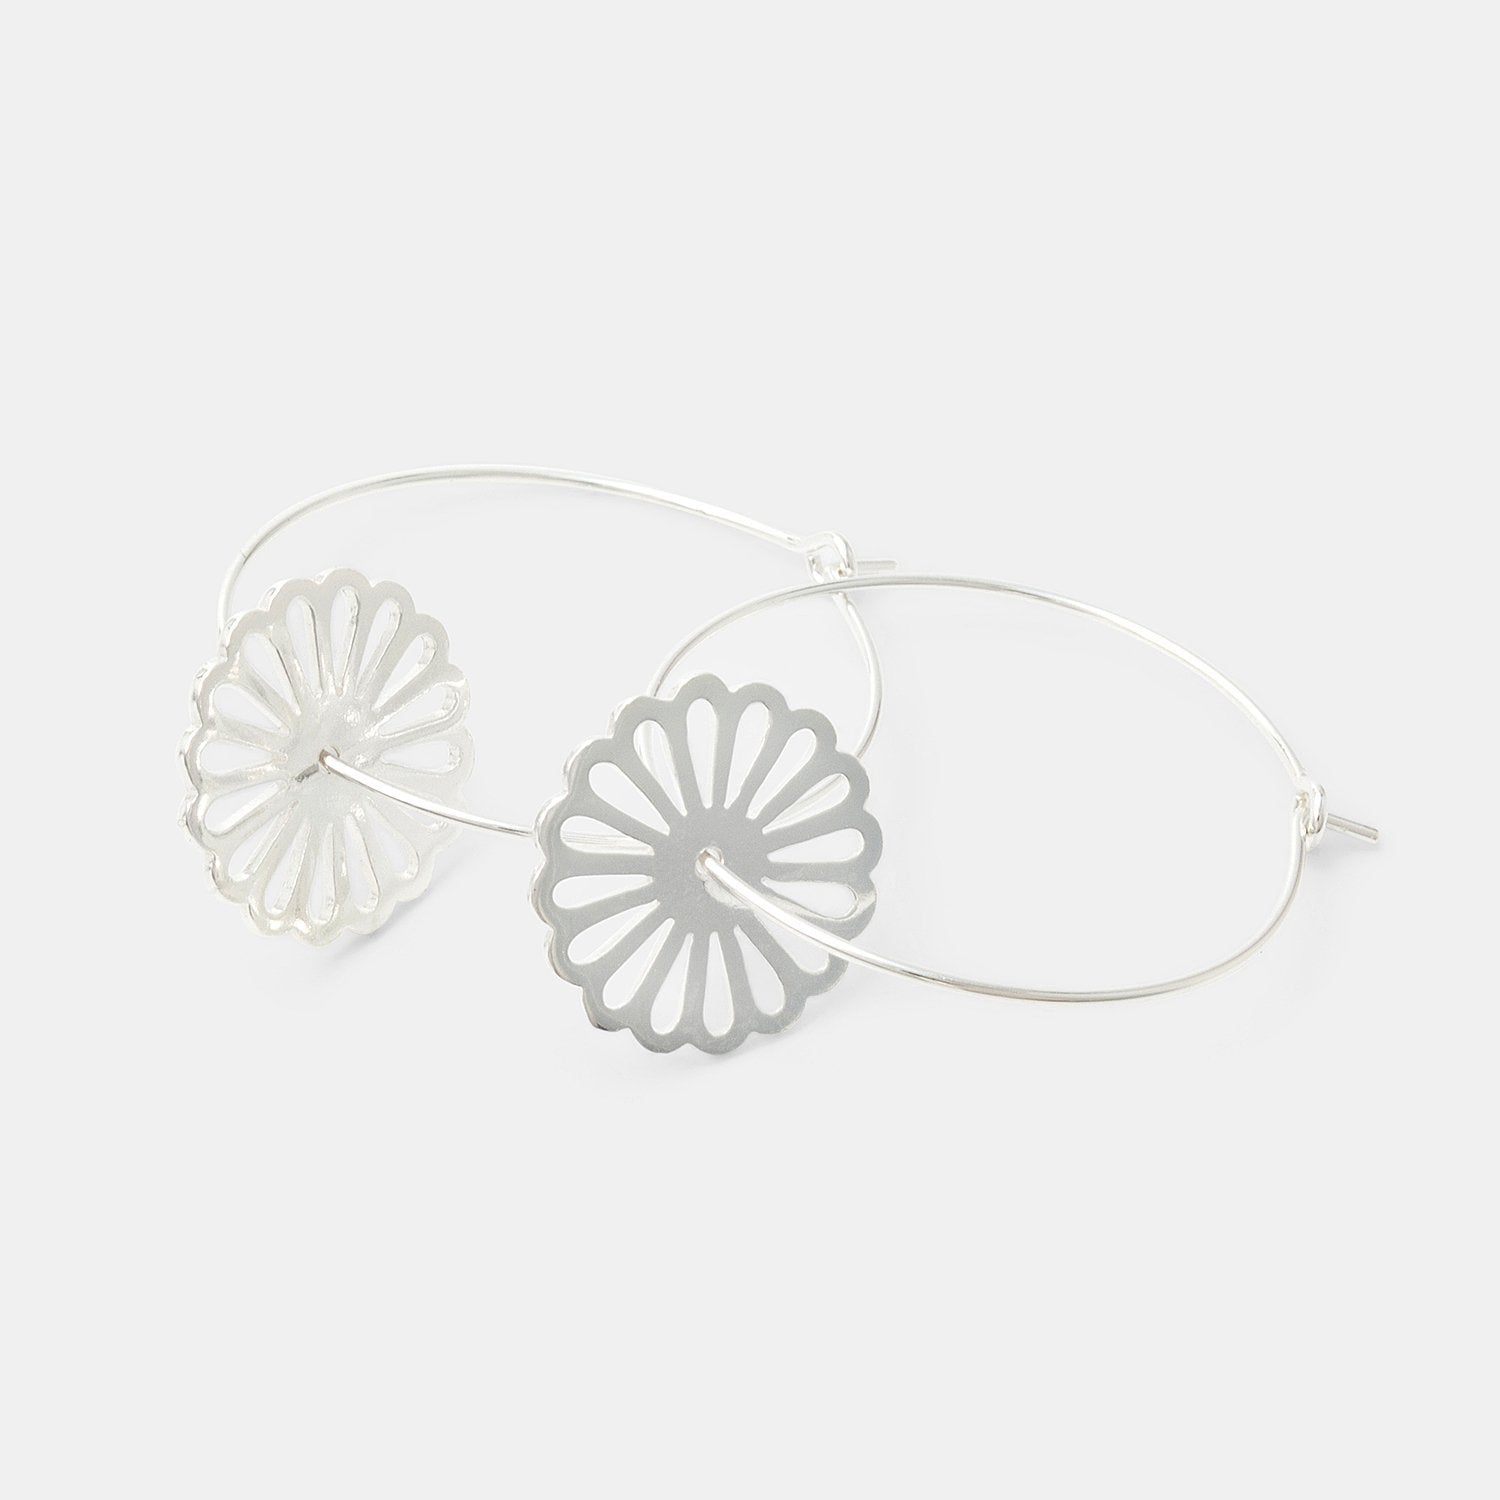 Daisy hoop earrings - Simone Walsh Jewellery Australia